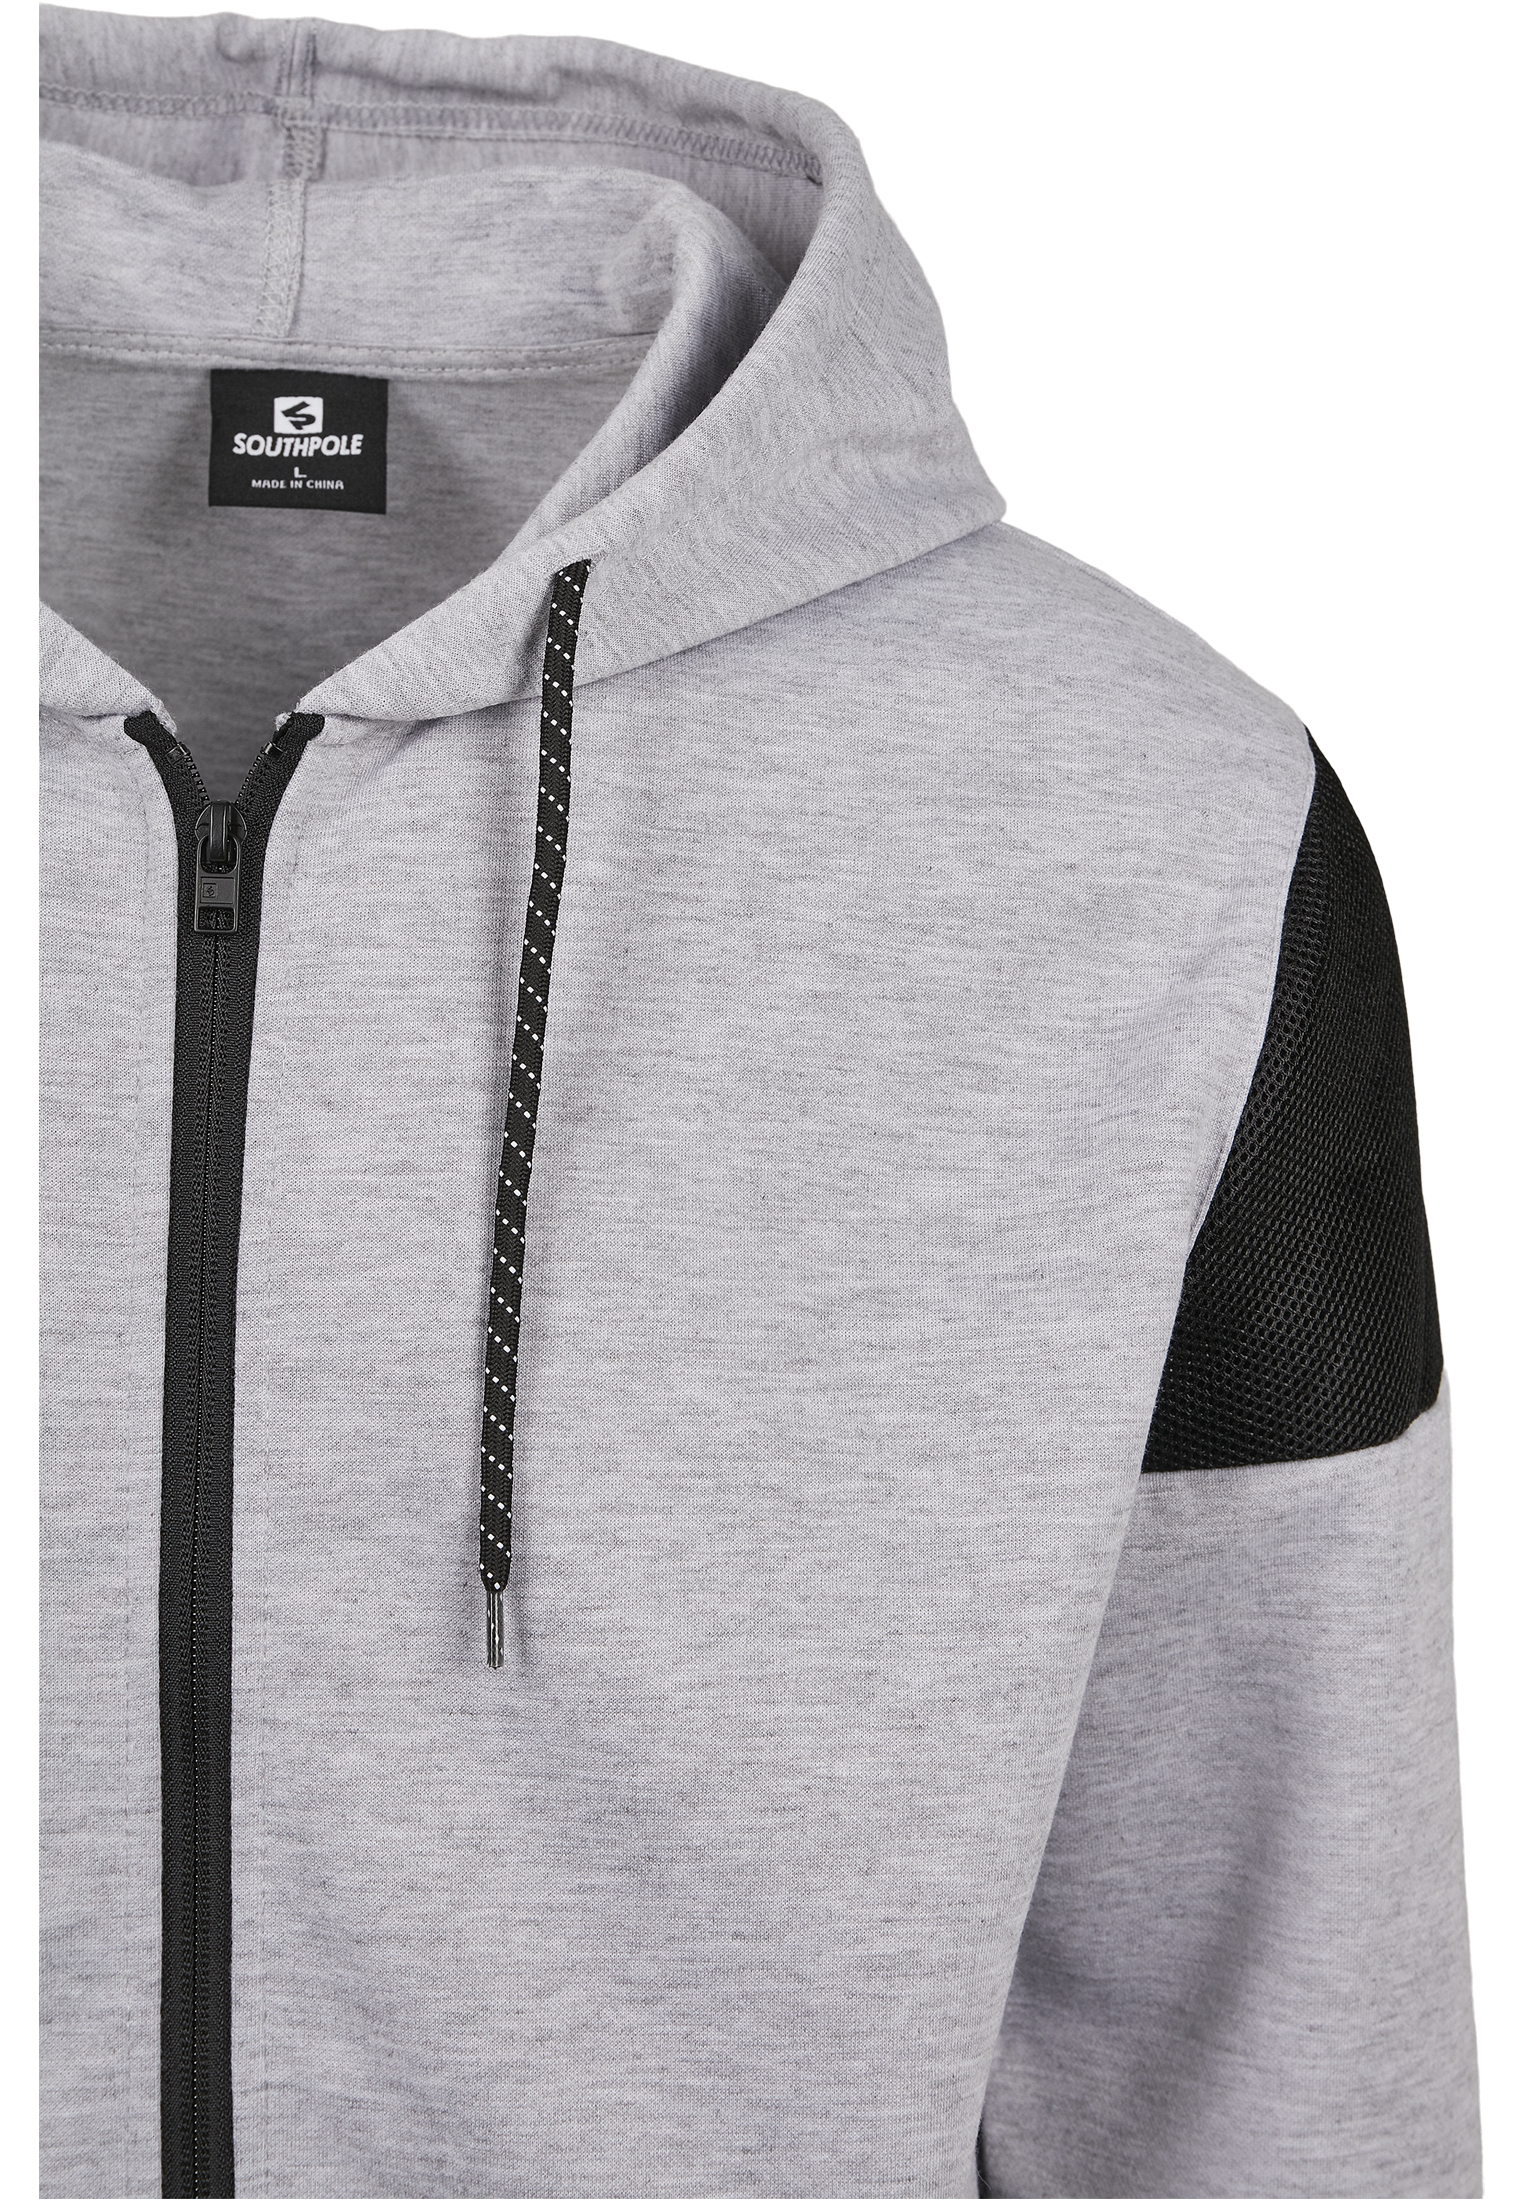 Southpole Neoprene Block Tech Fleece Full Zip Hoodie in Farbe heather grey